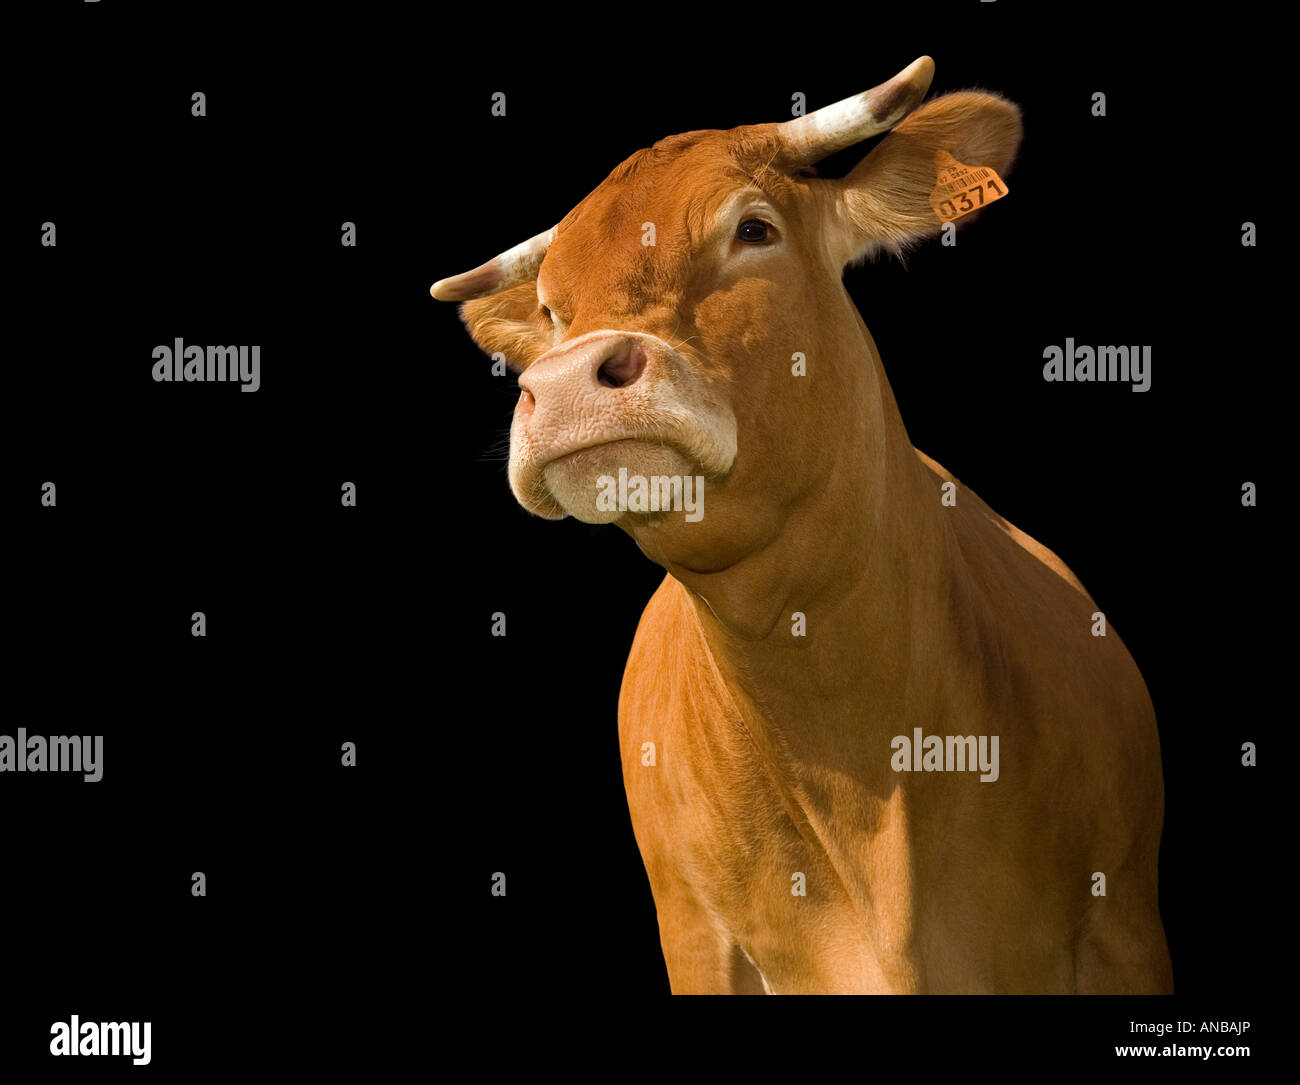 Un ritaglio di una mucca Limousin (Bos taurus domesticus), su sfondo nero. Vache de razza Limousine détourée sur fond noir. Foto Stock